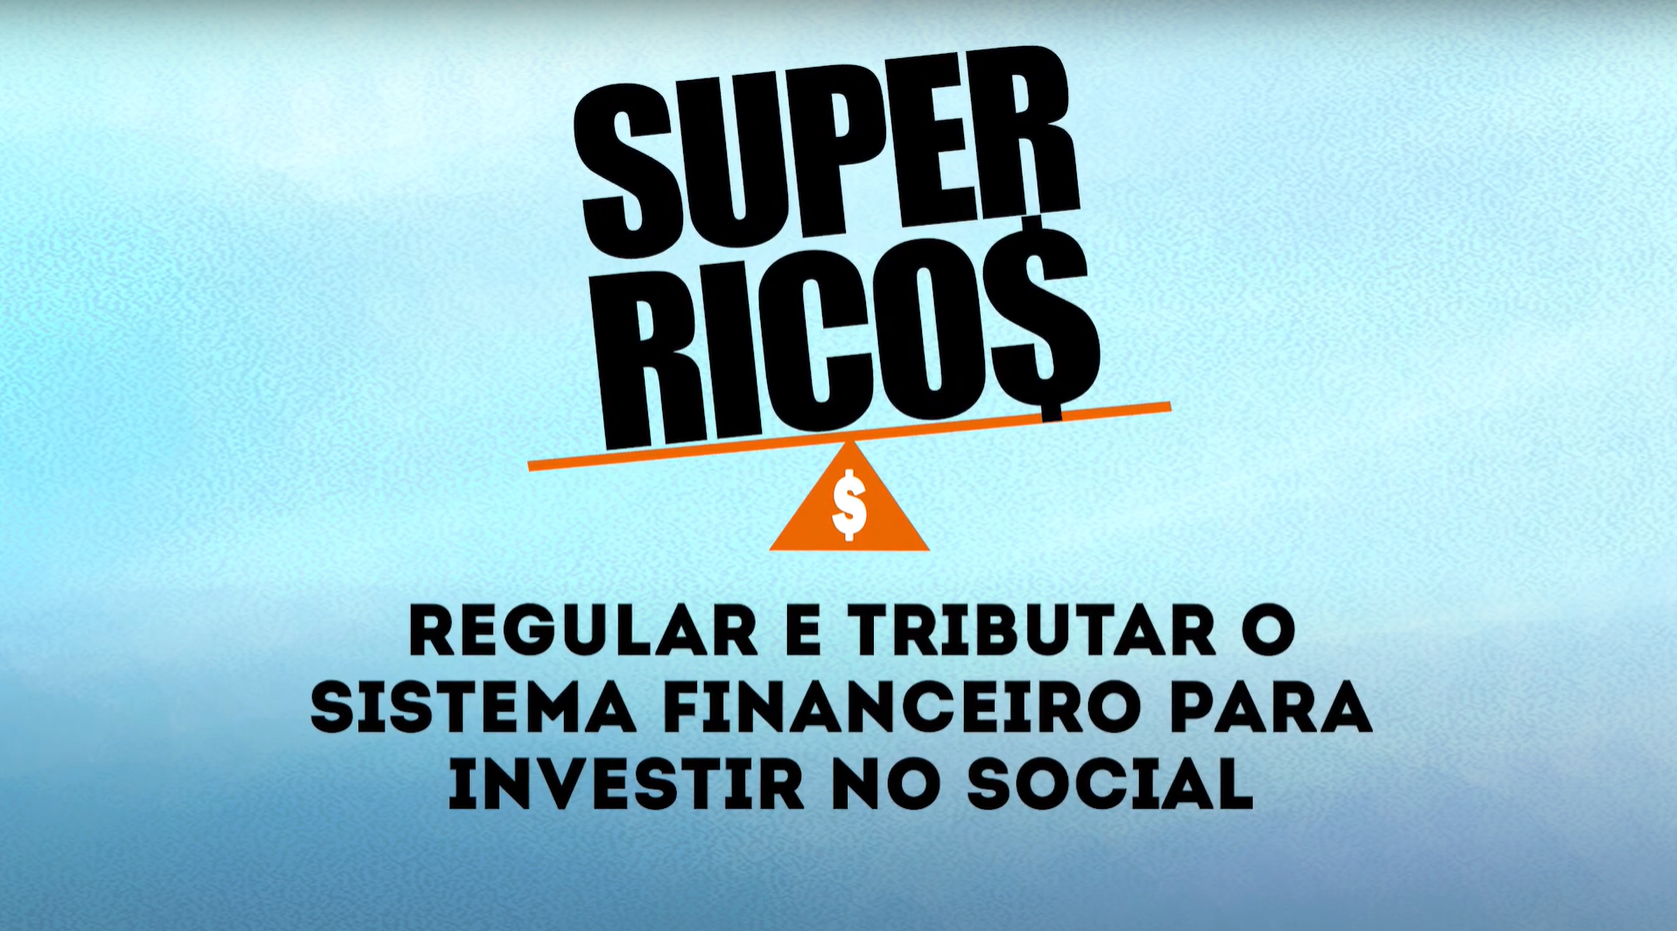 Regular e tributar o sistema financeiro para investir no social